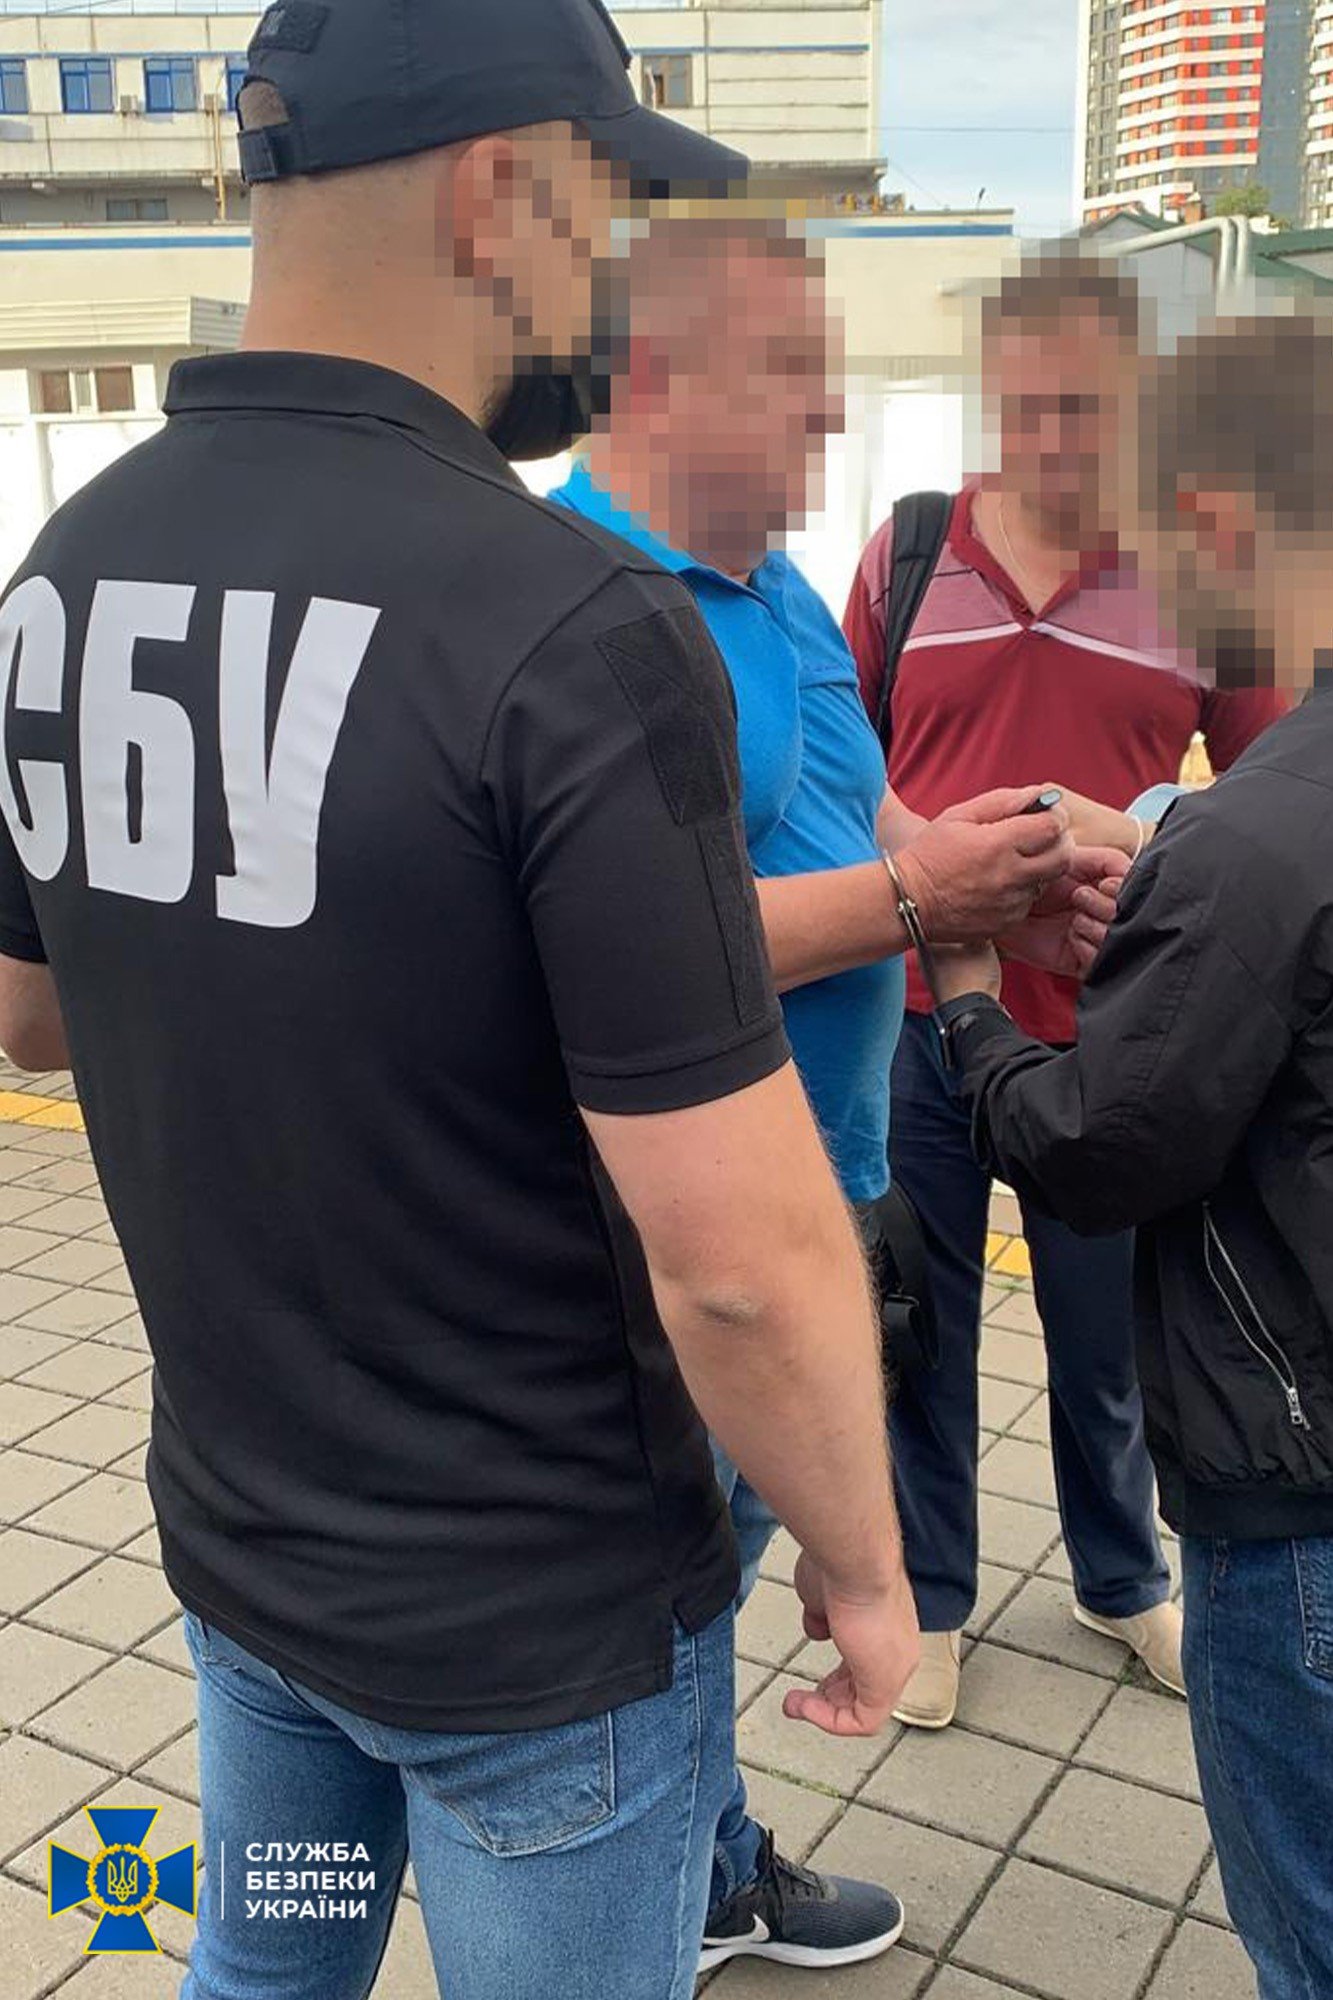 Присвоил почти 1 млн грн: в Киеве СБУ задержала экс-чиновника "Укрзализныци"